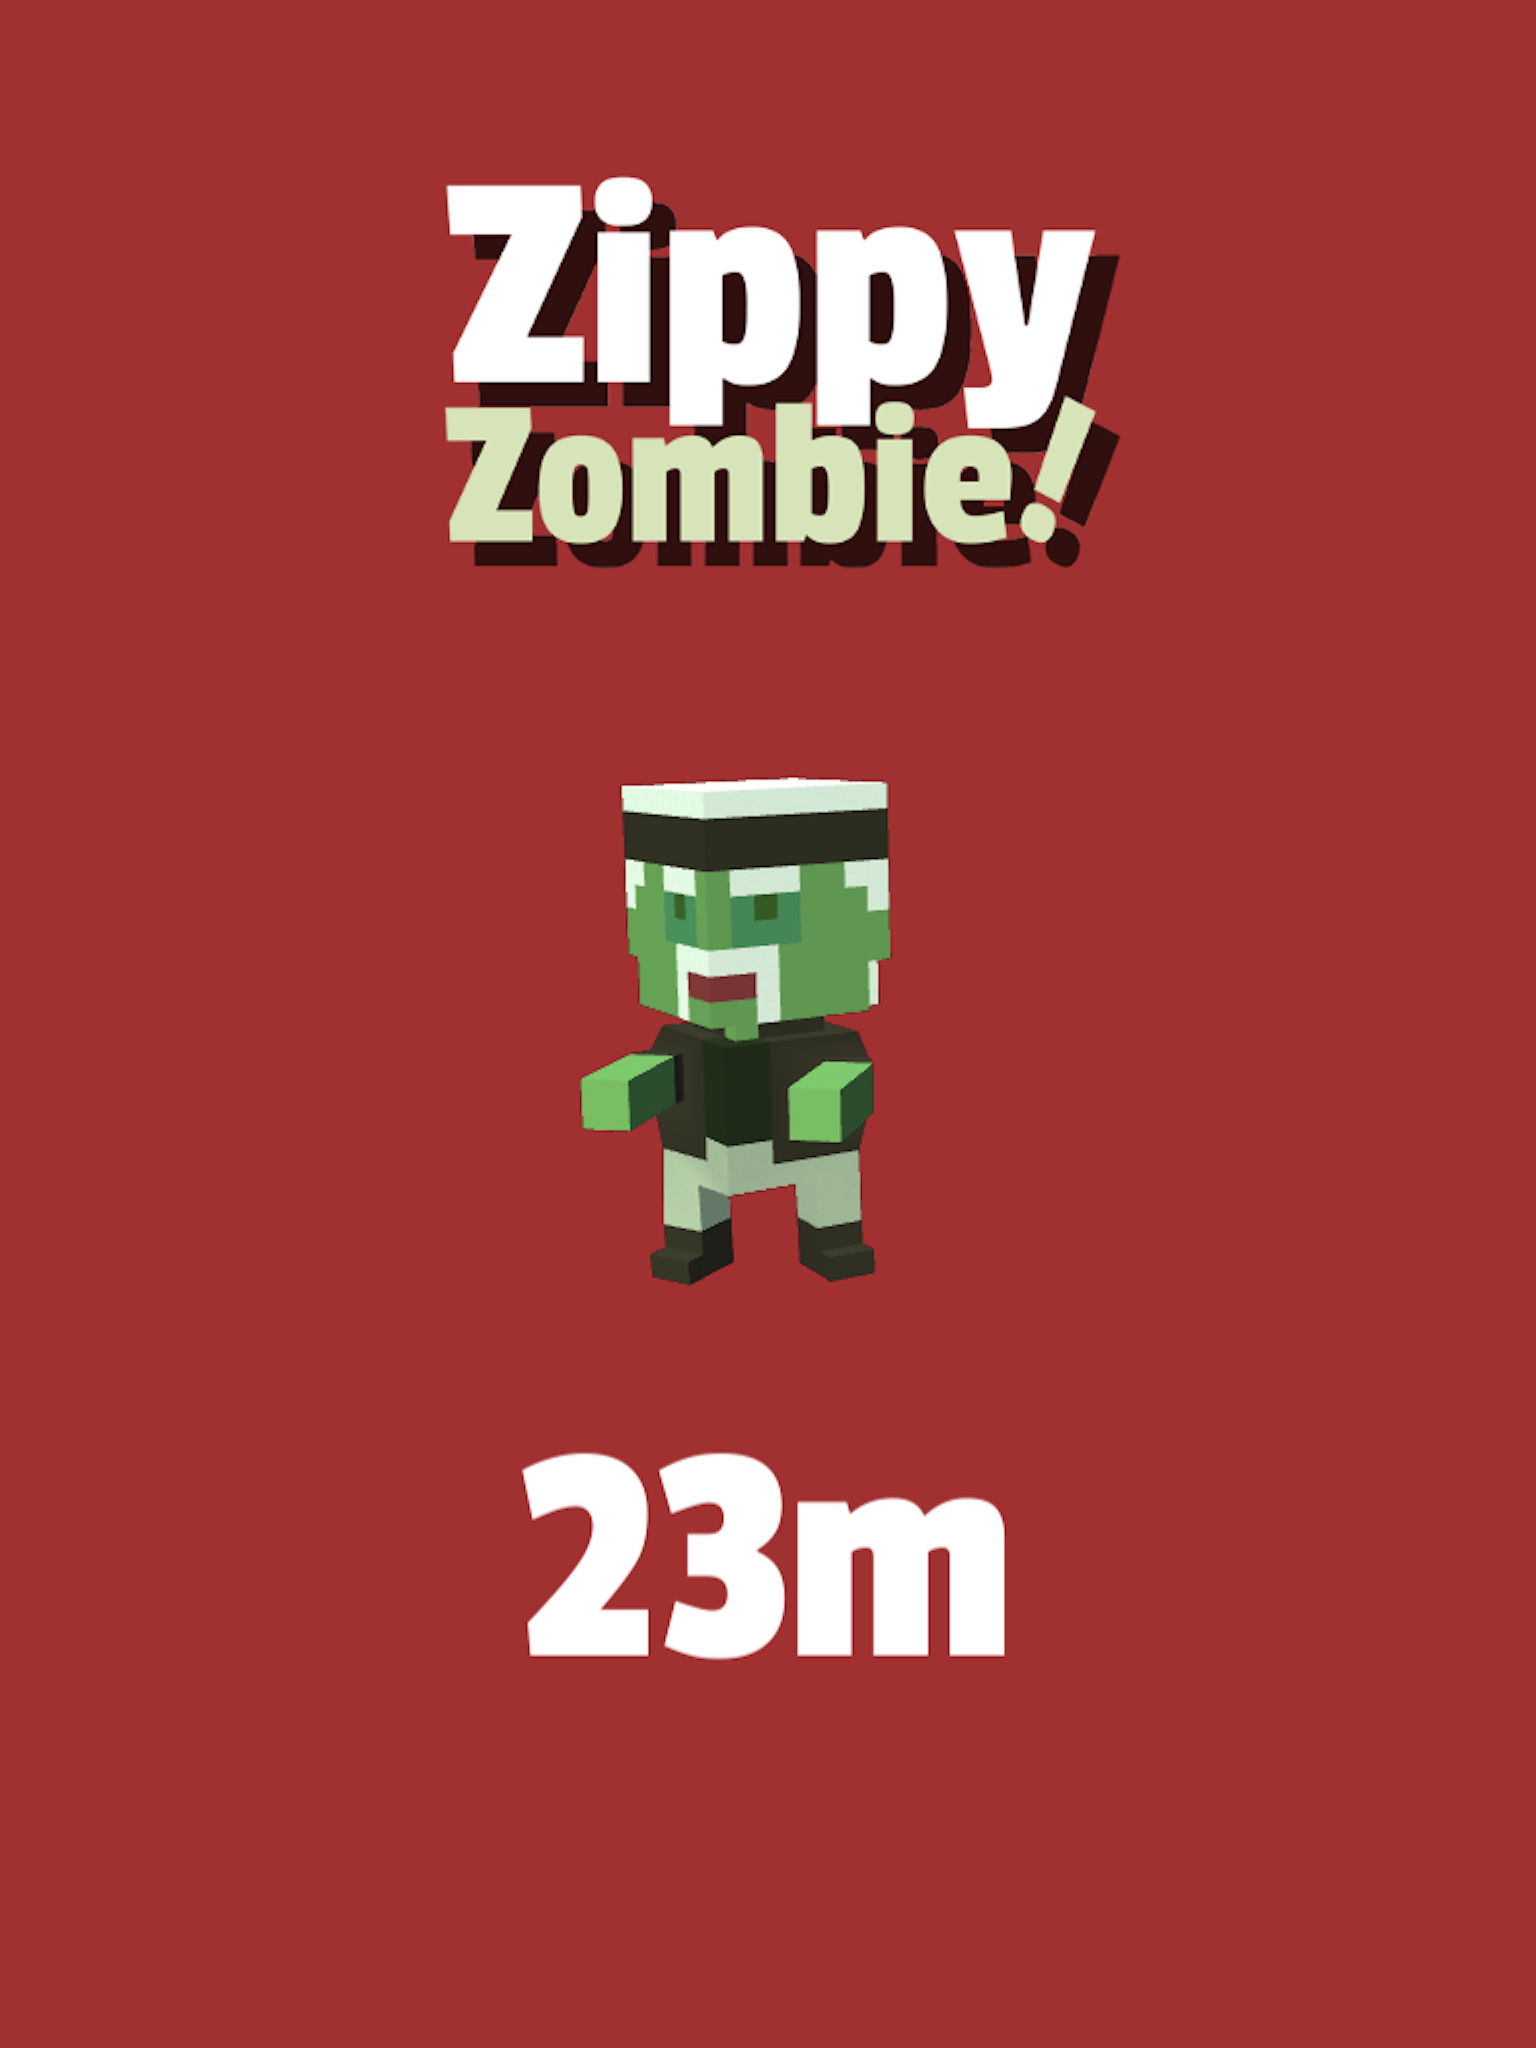 Zippy Zombie! すぐ遊べる暇つぶしゾンビゲームのキャプチャ